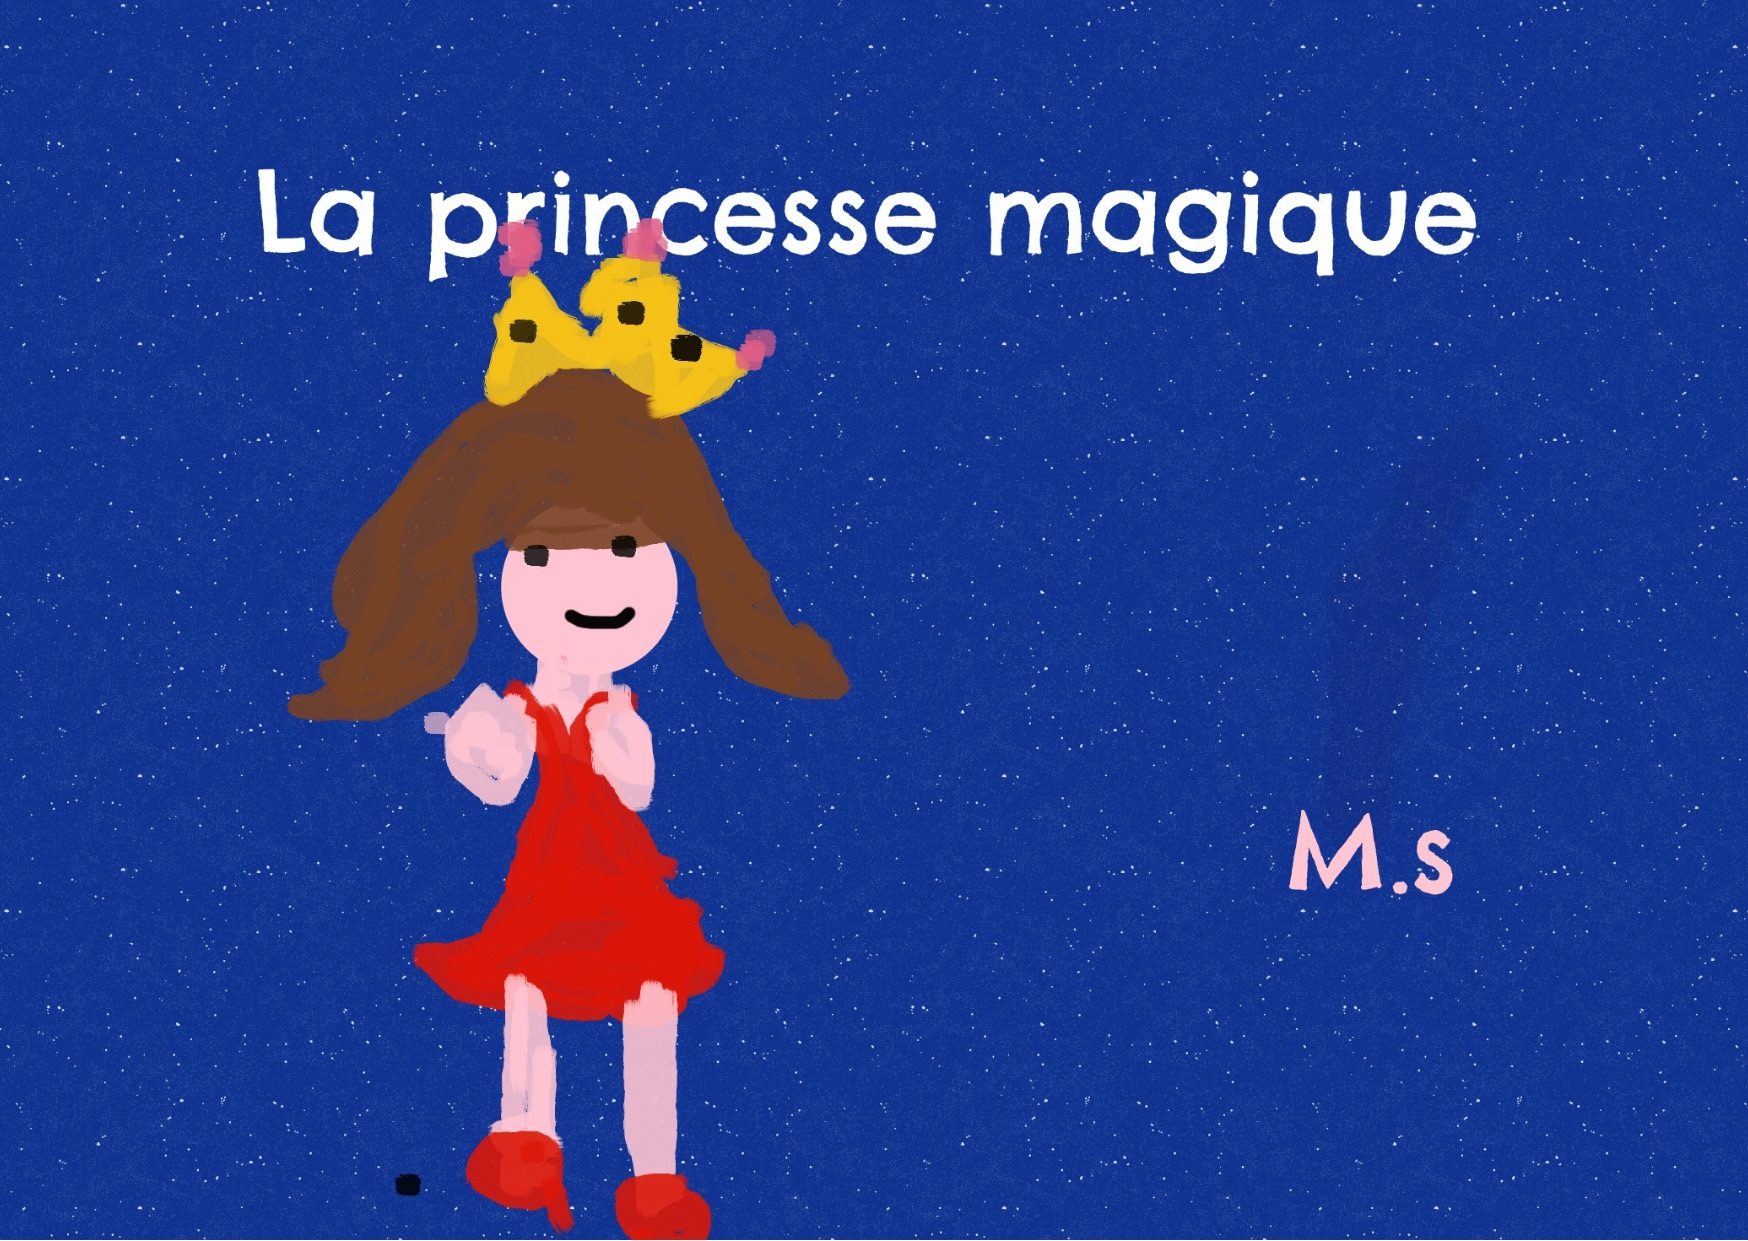 La princesse magique